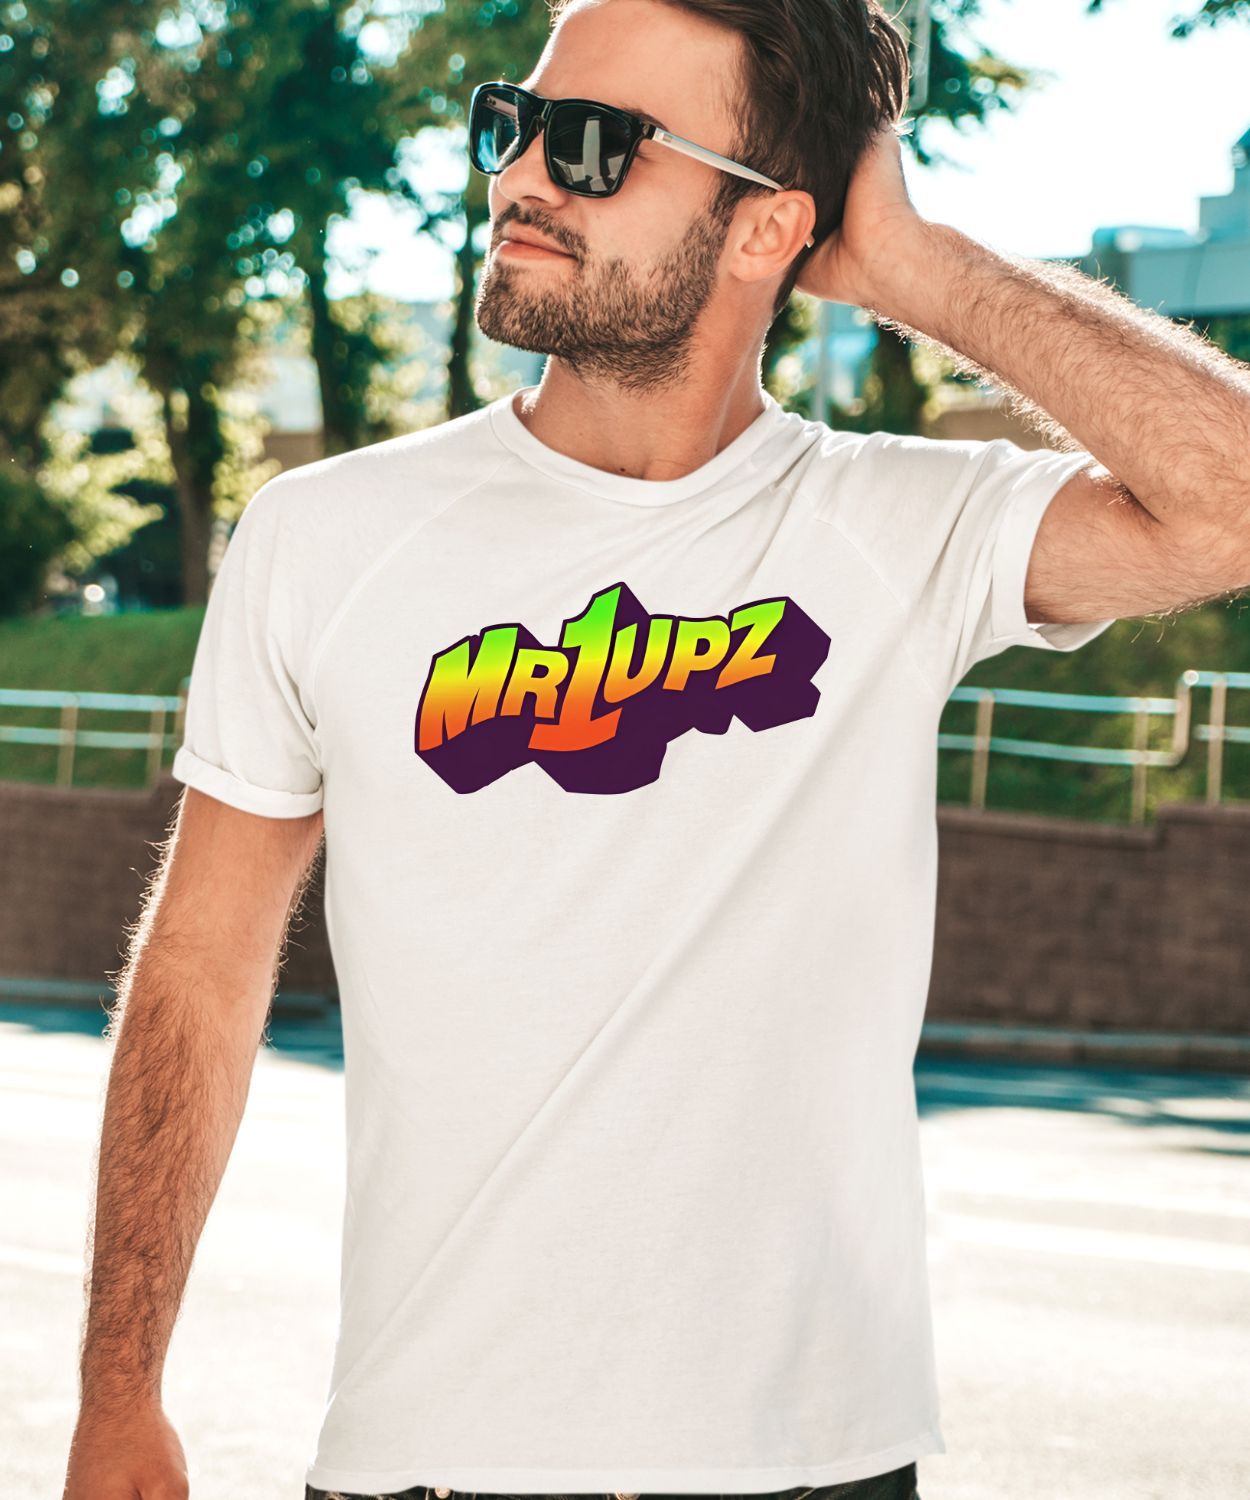 Mr1upz Shagadelic Shirt